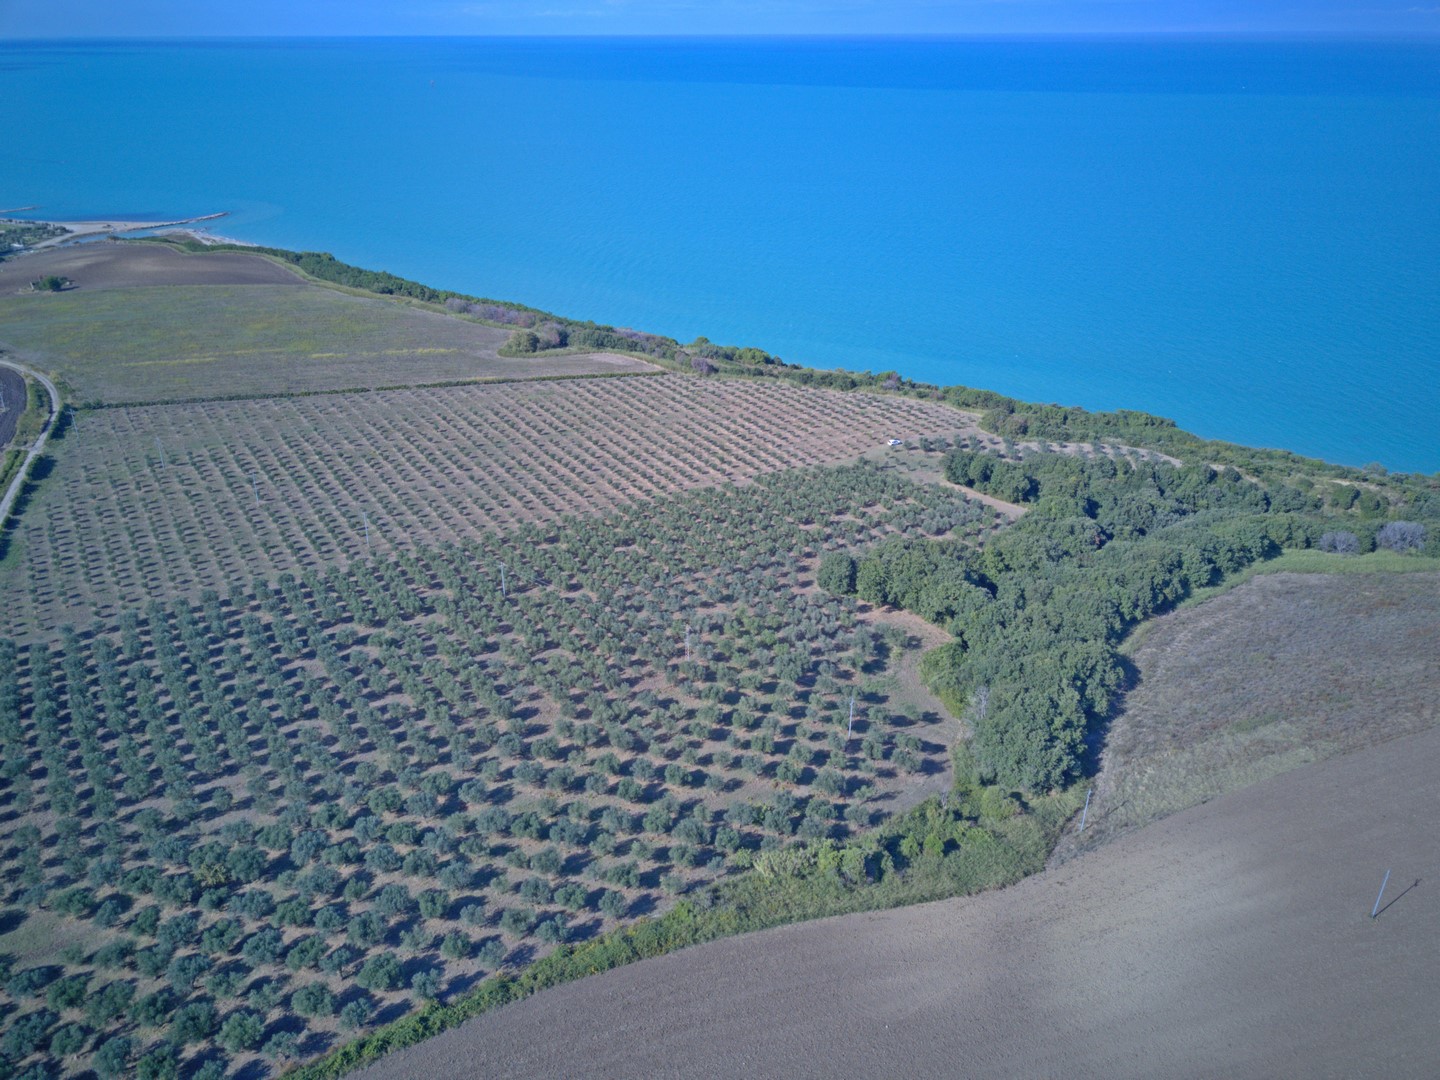 Olivenproduktion am Meer